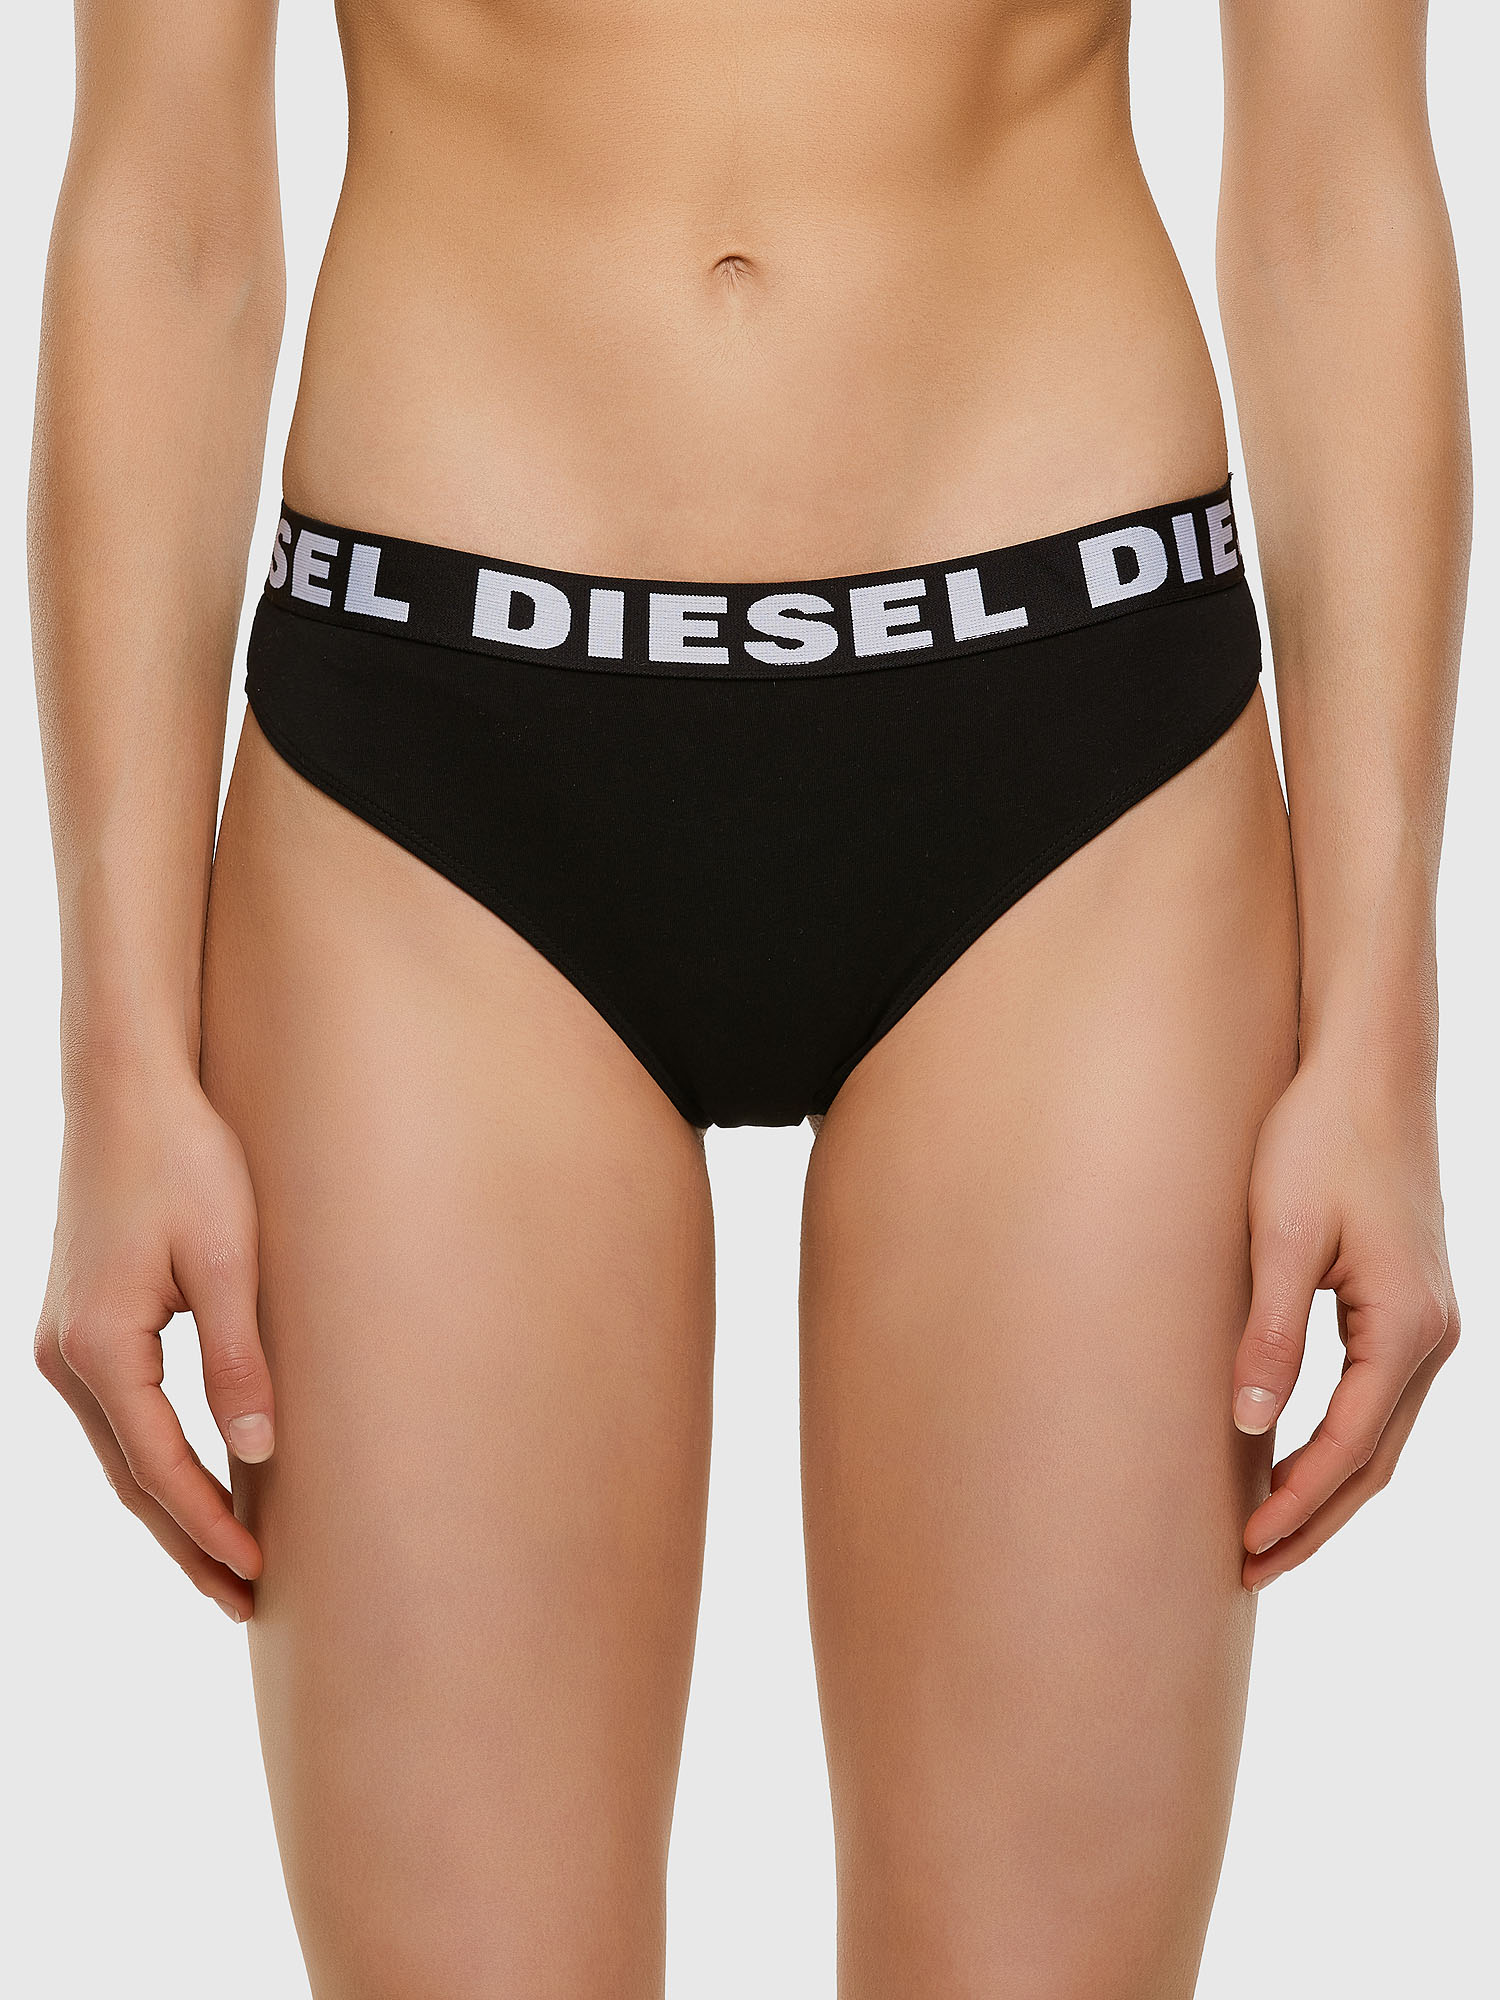 Diesel - UFPN-ALLY, Black - Image 1